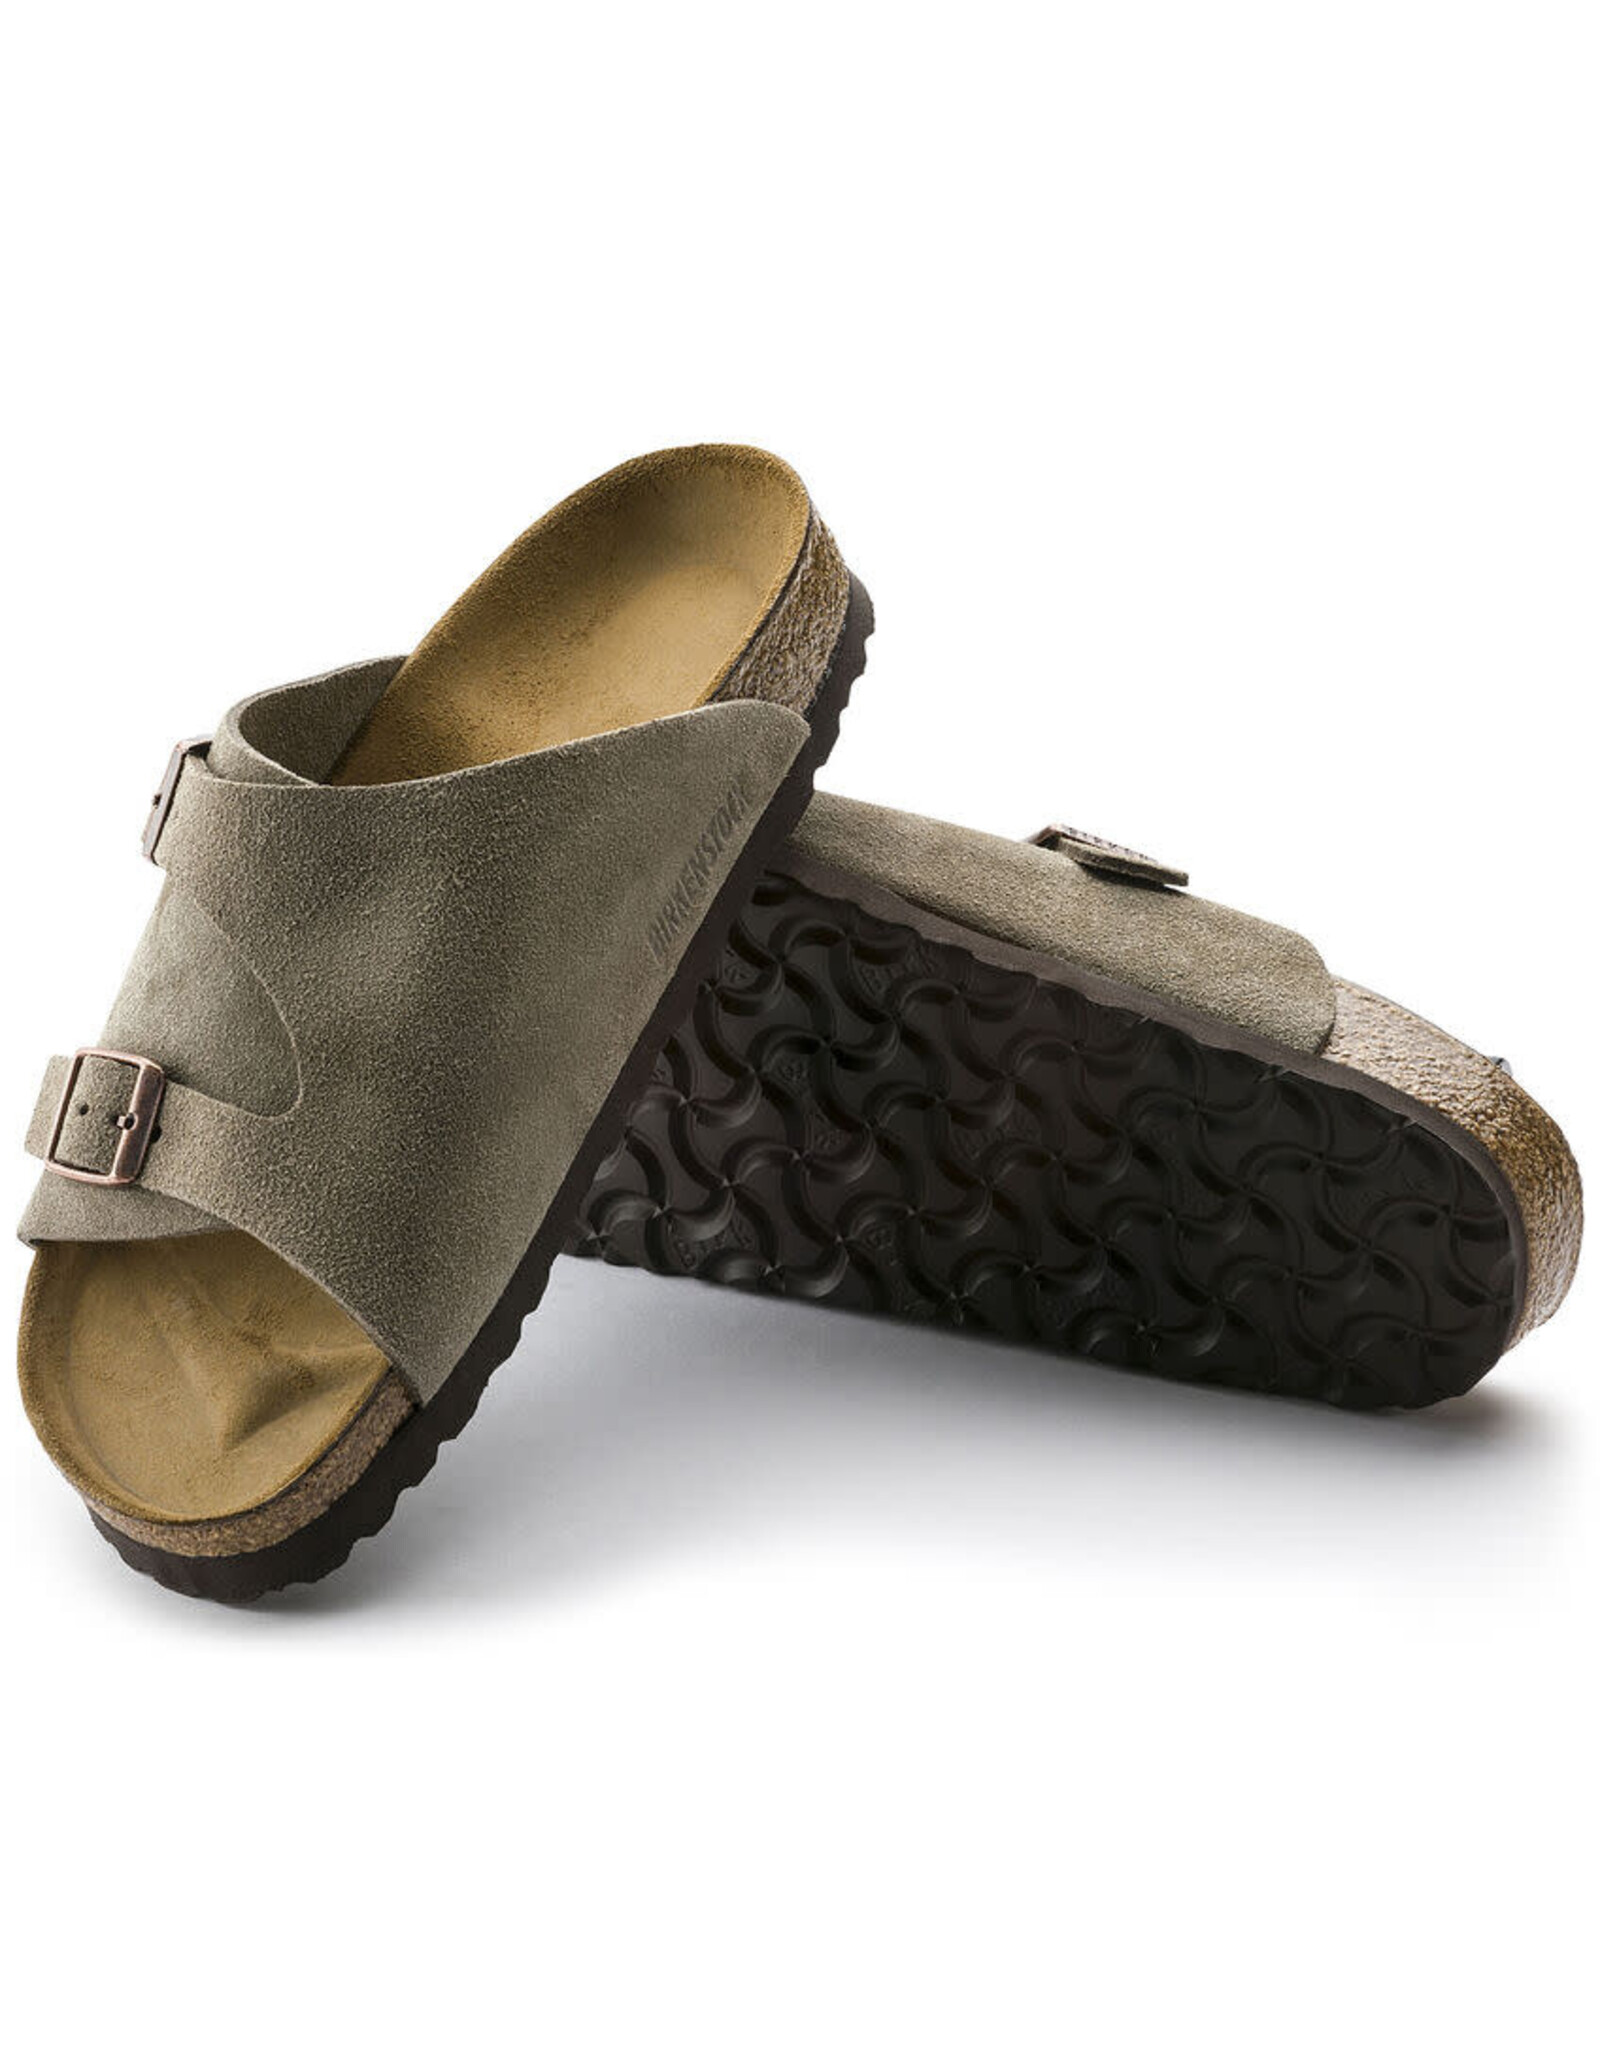 Birkenstock Zurich Suede Leather Sandal